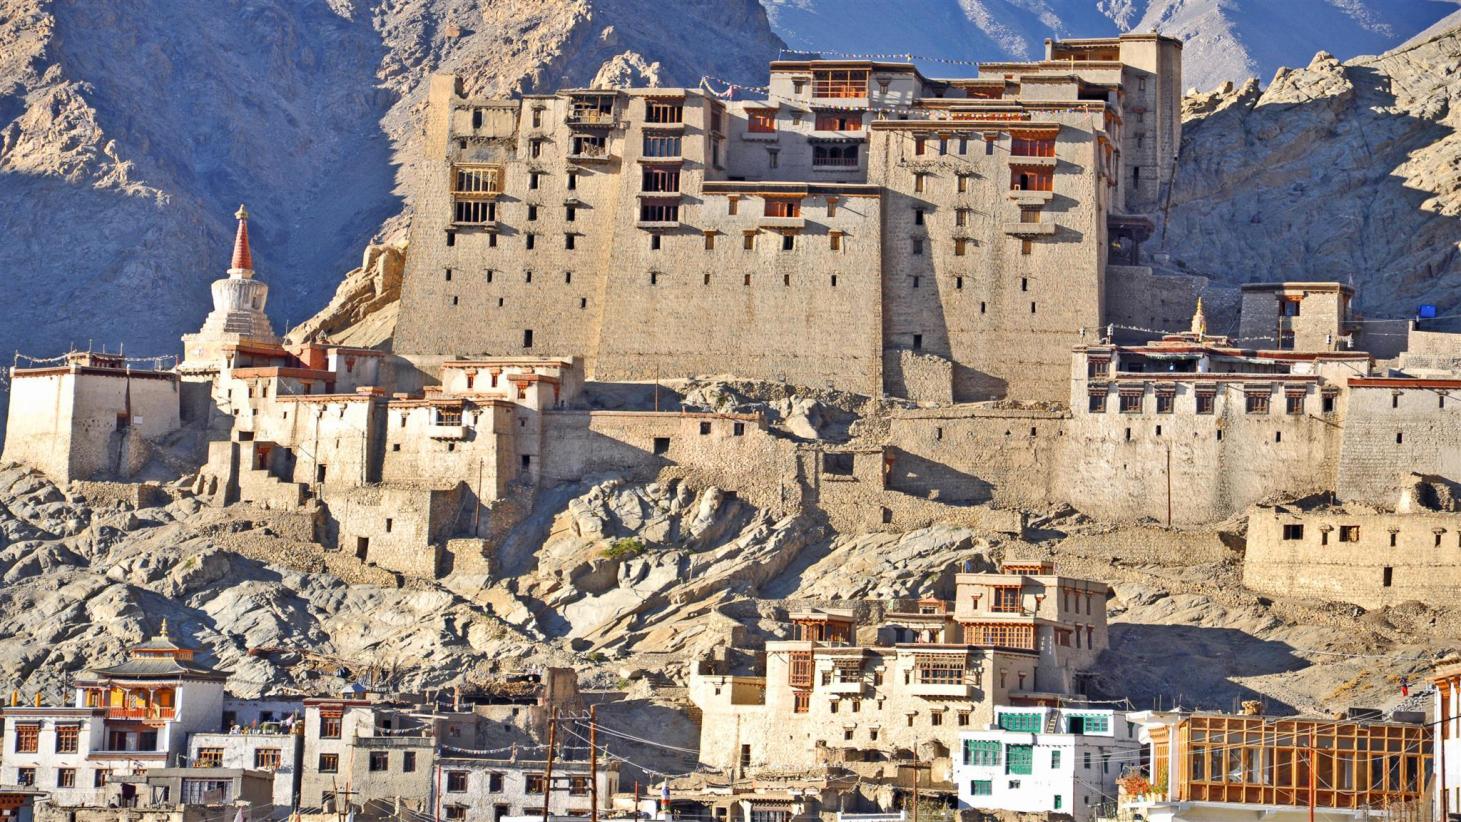 Premium 6 Days Leh Ladakh Sightseeing Tour